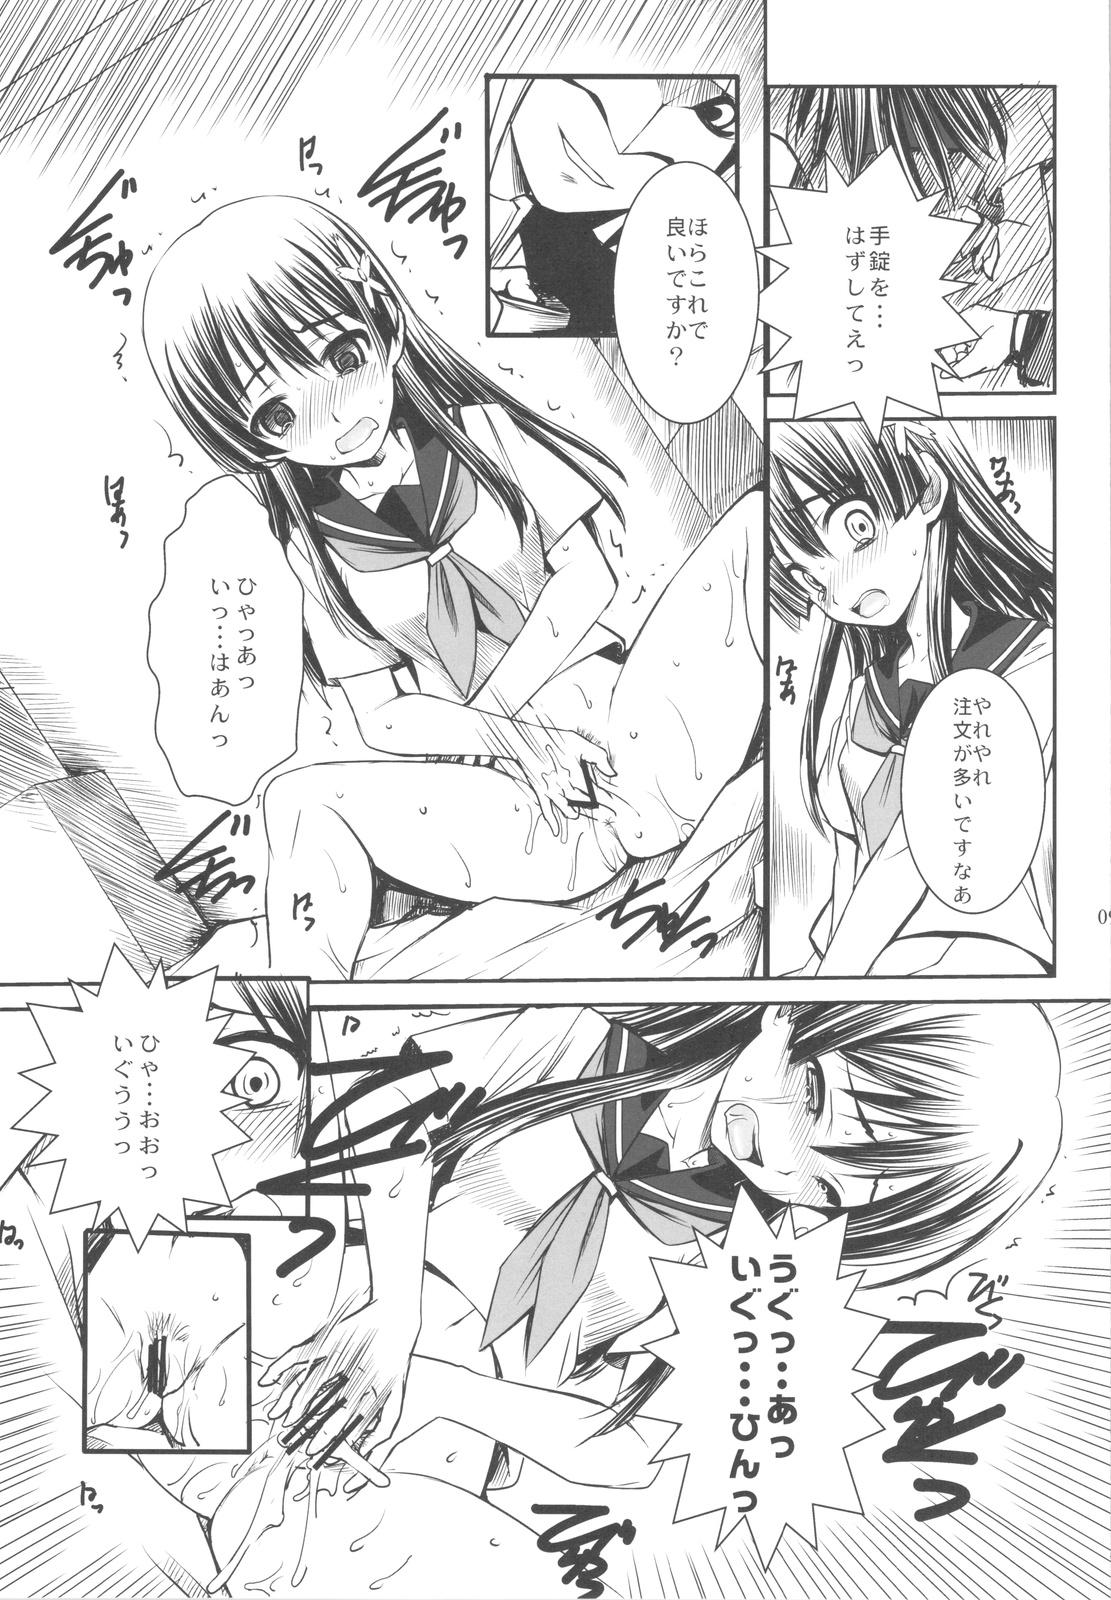 Classroom ERECTLIC THUNDER - Toaru kagaku no railgun Hardcoresex - Page 9